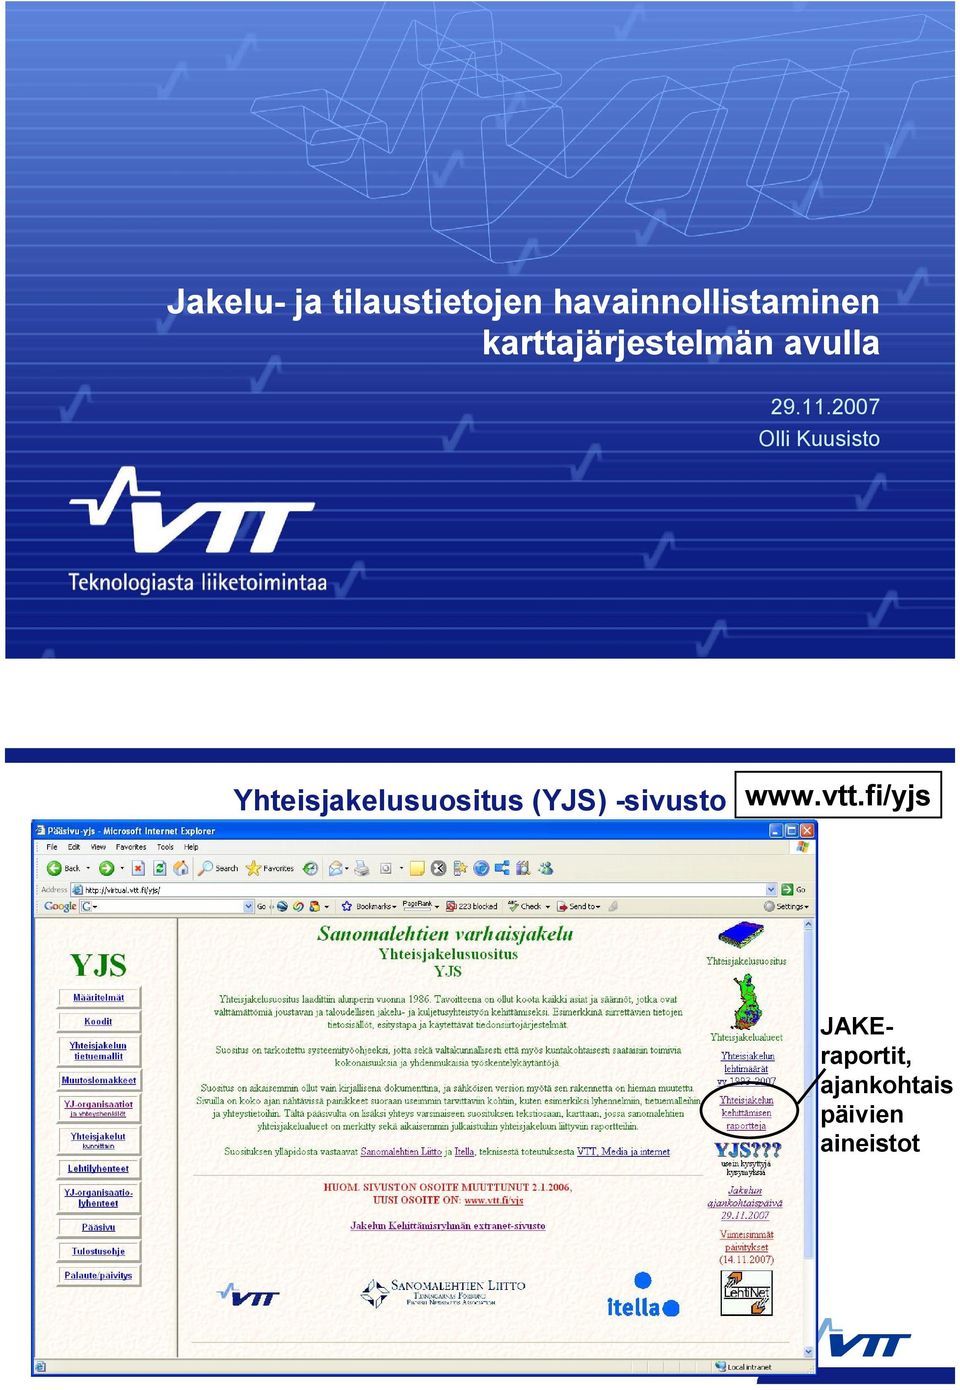 2007 Olli Kuusisto Yhteisjakelusuositus (YJS)